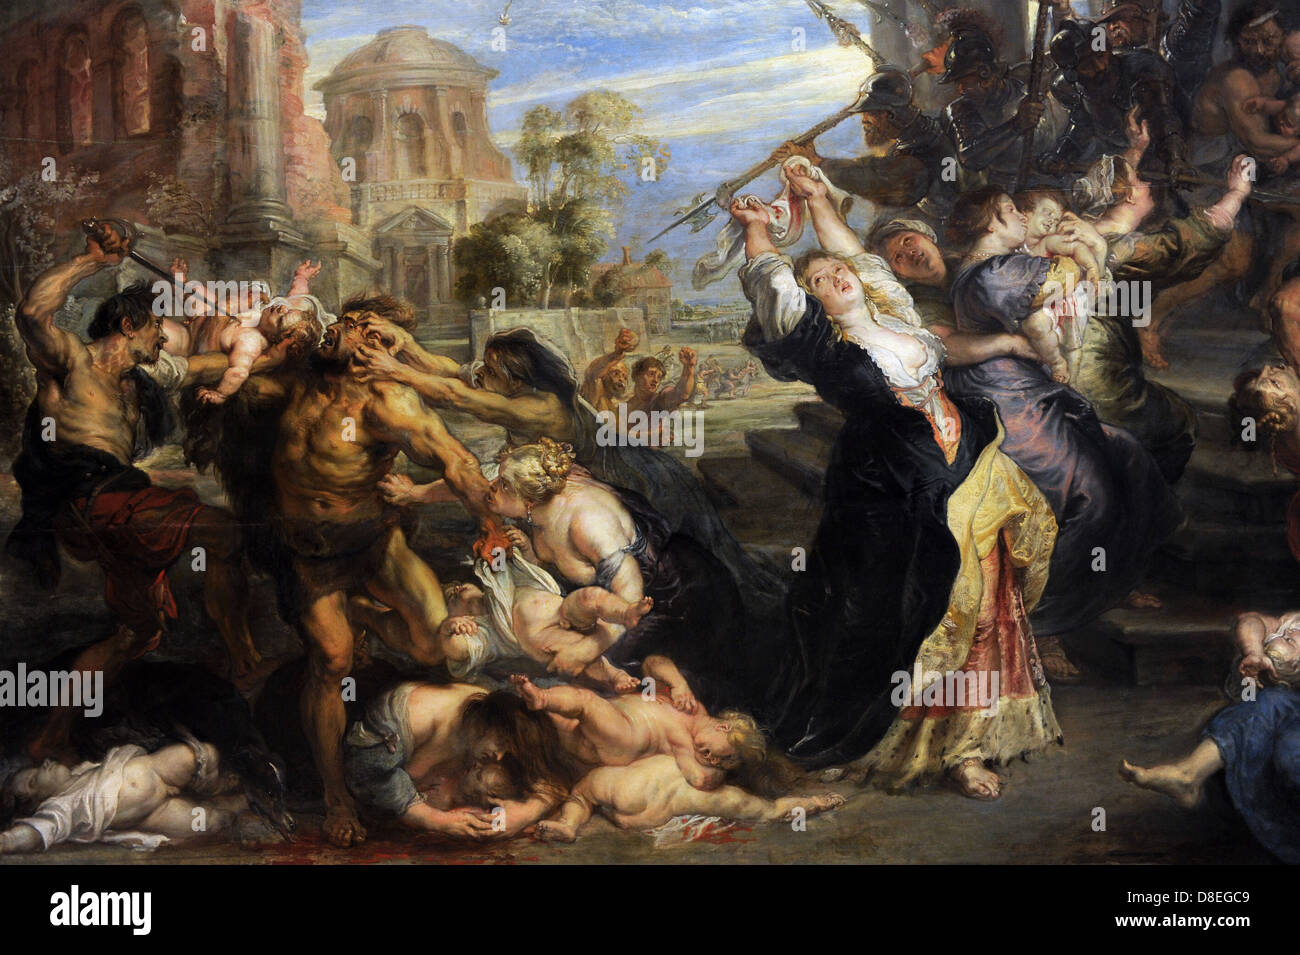 Rubens (1577-1640). Deutsch-stämmige flämischen Barock Maler. Massaker der unschuldigen, 1635-40. Detail. Stockfoto